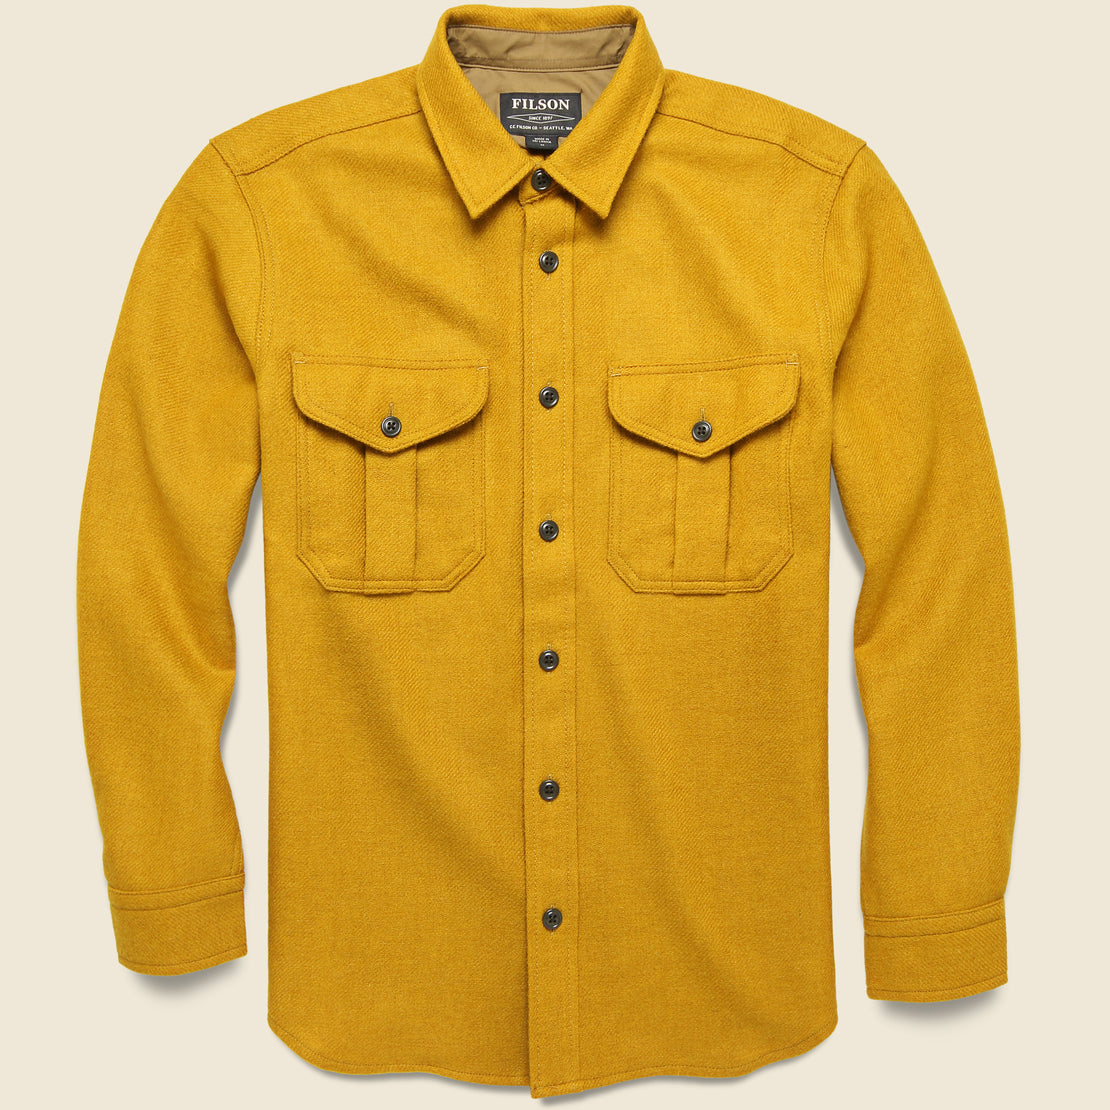 Filson Northwest Wool Shirt - Mustard